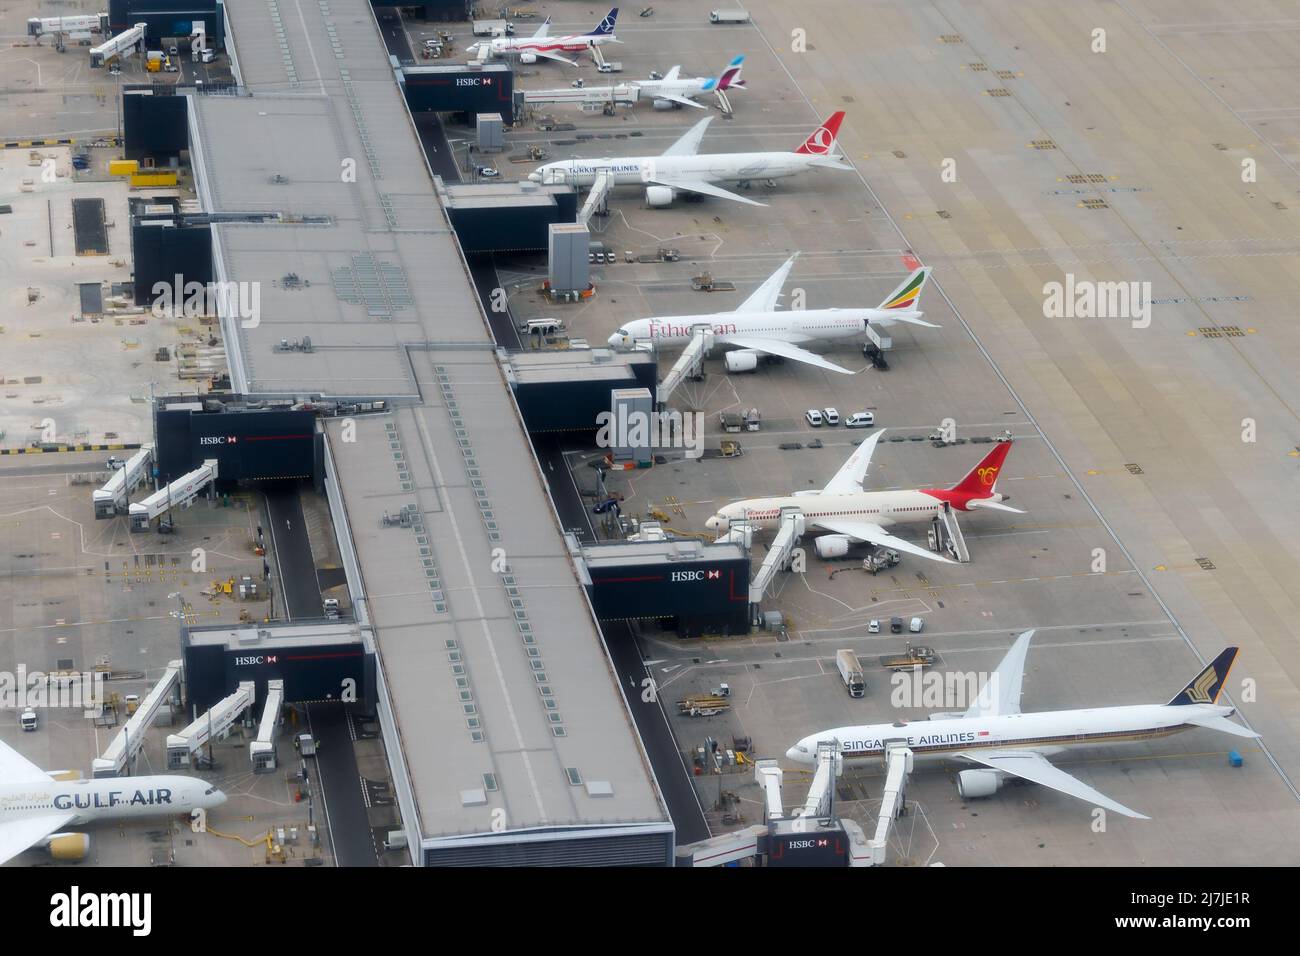 Heathrow Airport Terminal 2 und mehrere Flugzeuge. LHR Airport Terminal 2 Gates am Concourse B von oben gesehen. Heathrow T2 ist voll. Stockfoto